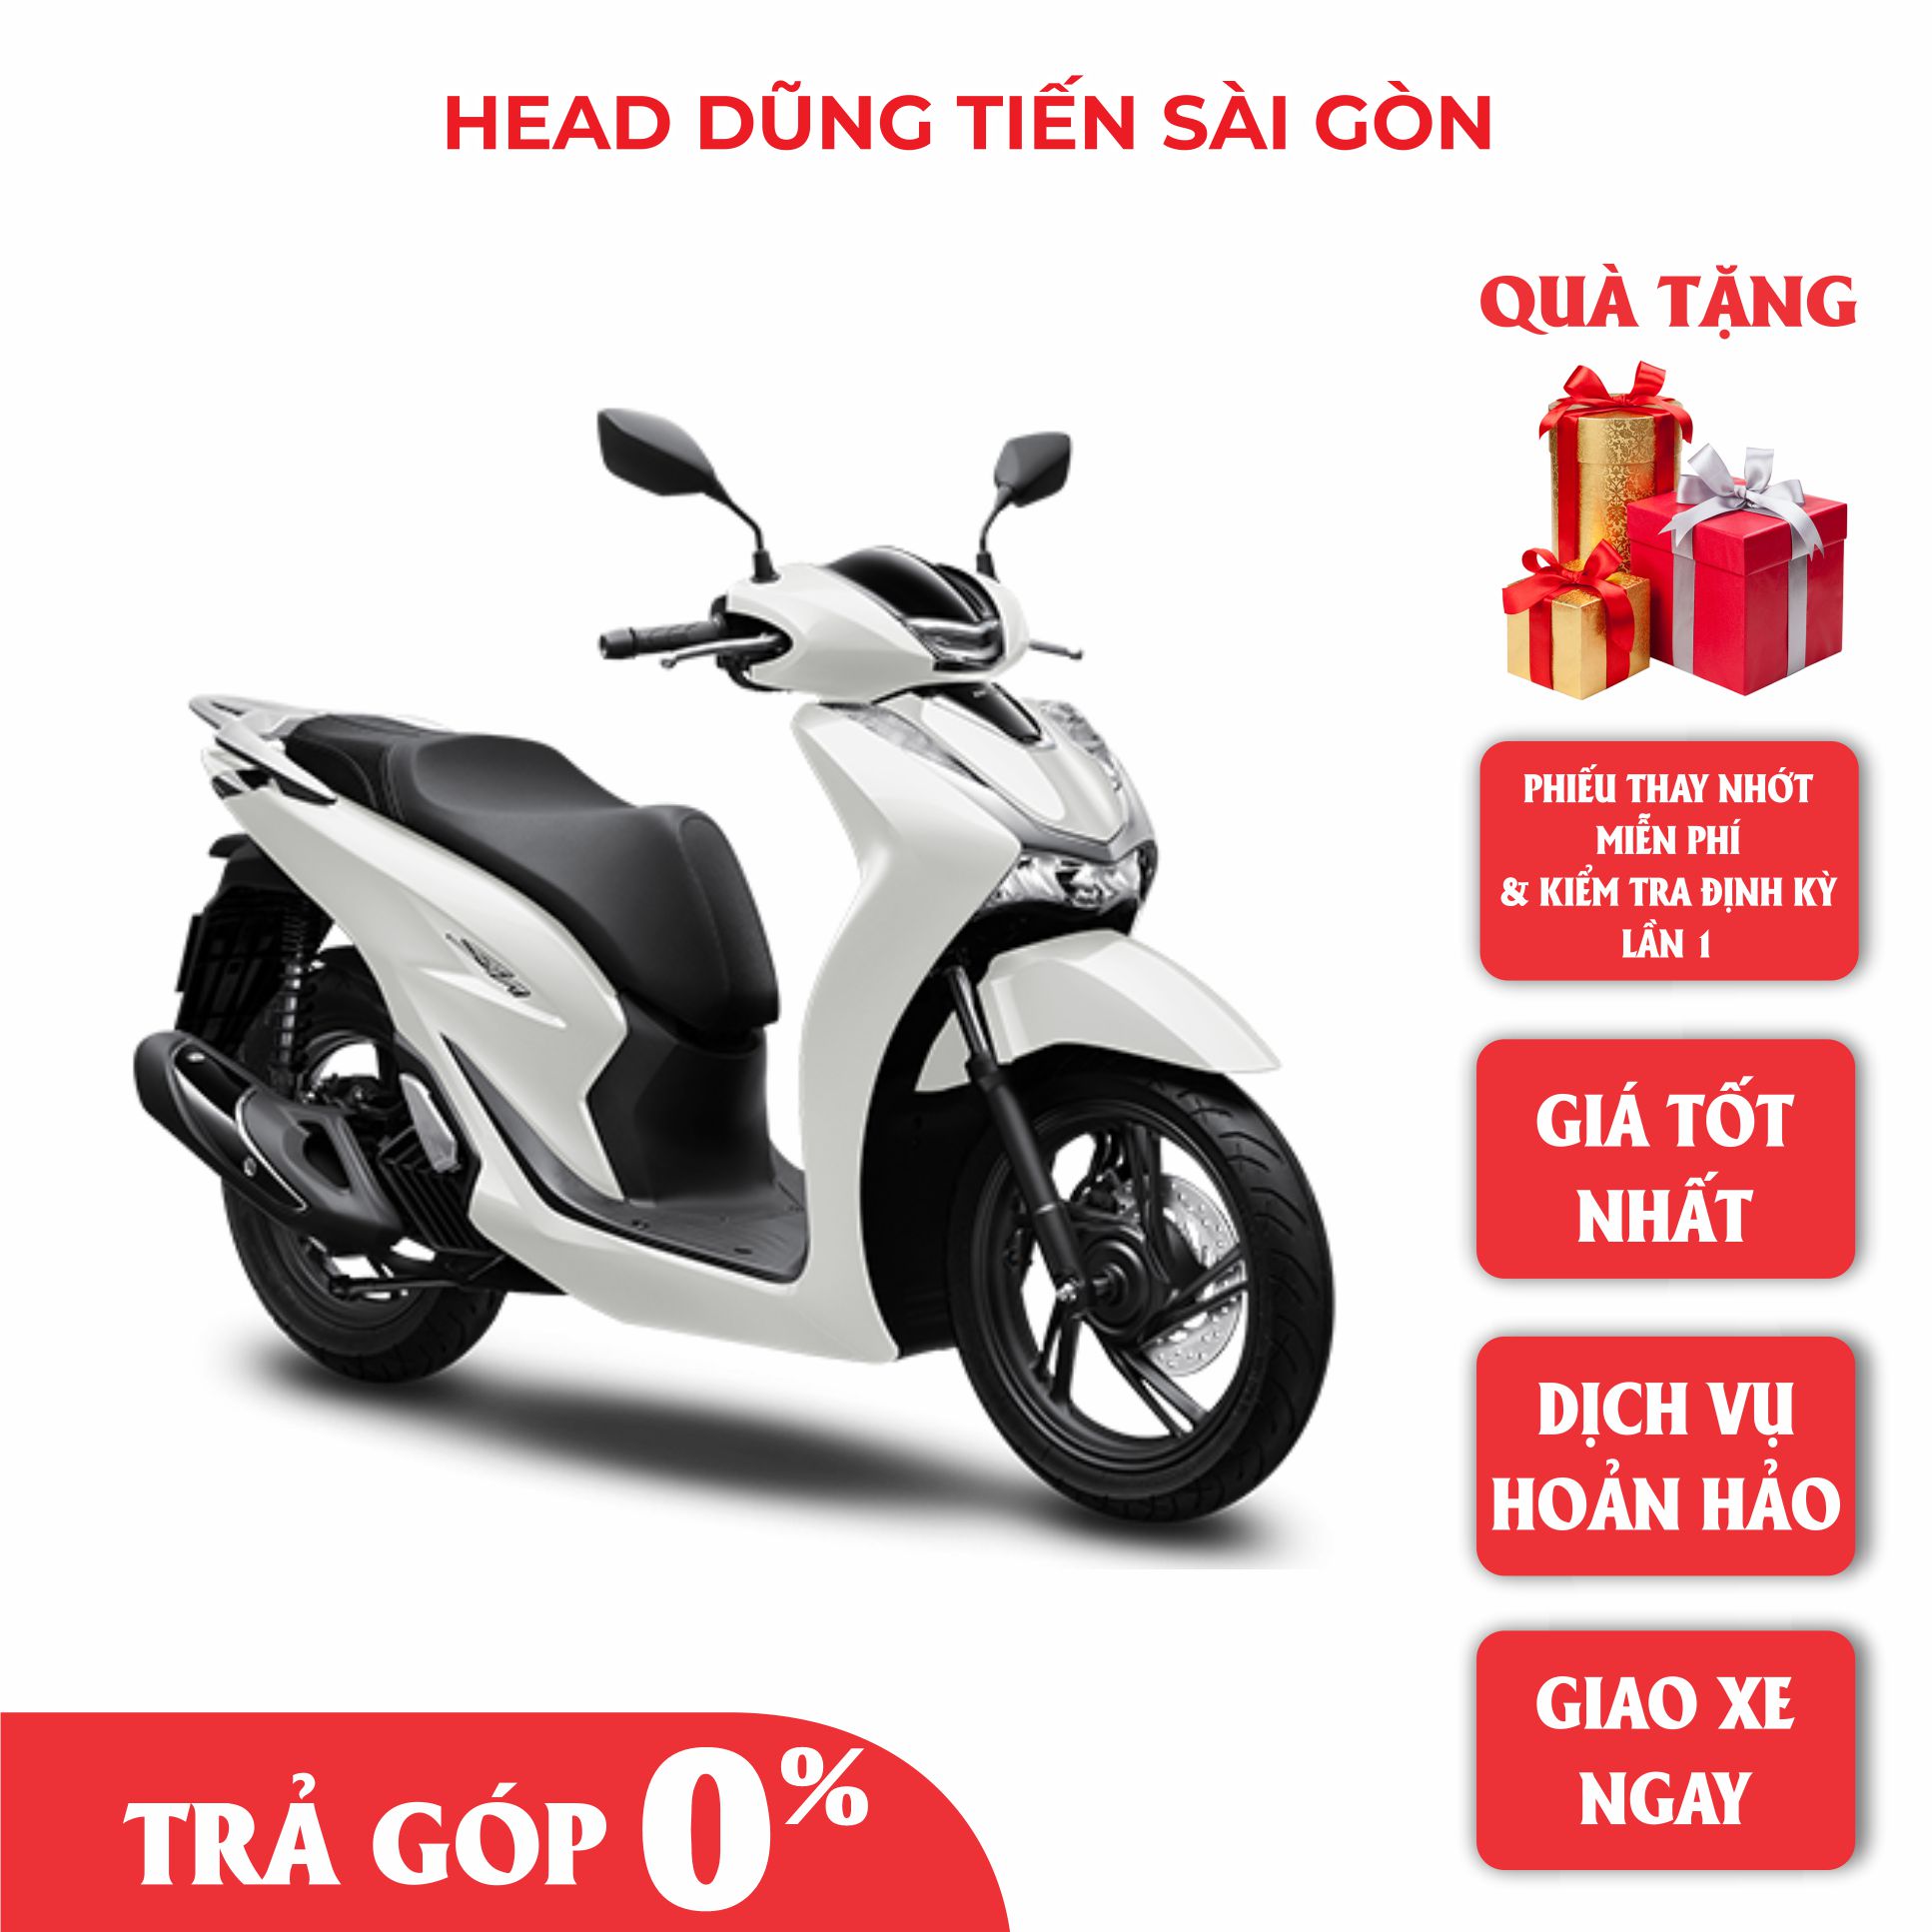 Honda SH 150 ABS Đen Sần 2022 Siêu Lướt 600km  Cửa Hàng Xe Máy Anh Lộc   Mua Bán Xe Máy Cũ Mới Chất Lượng Tại Hà Nội